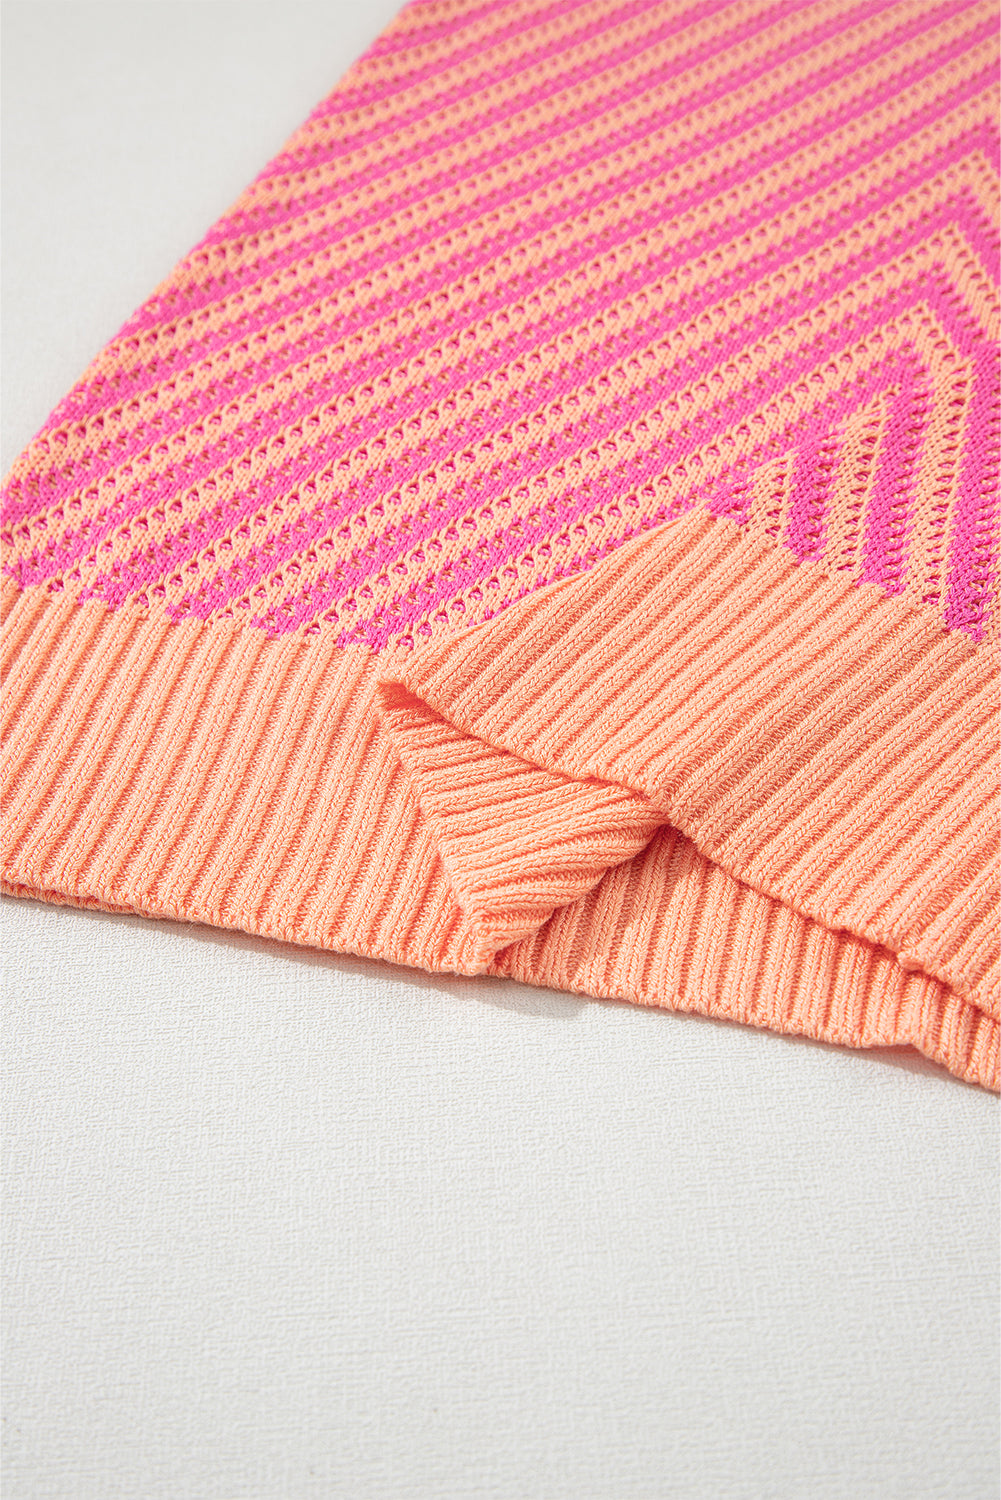 Strawberry Pink Contrast Chevron Knit V Neck Sweater Vest Tank